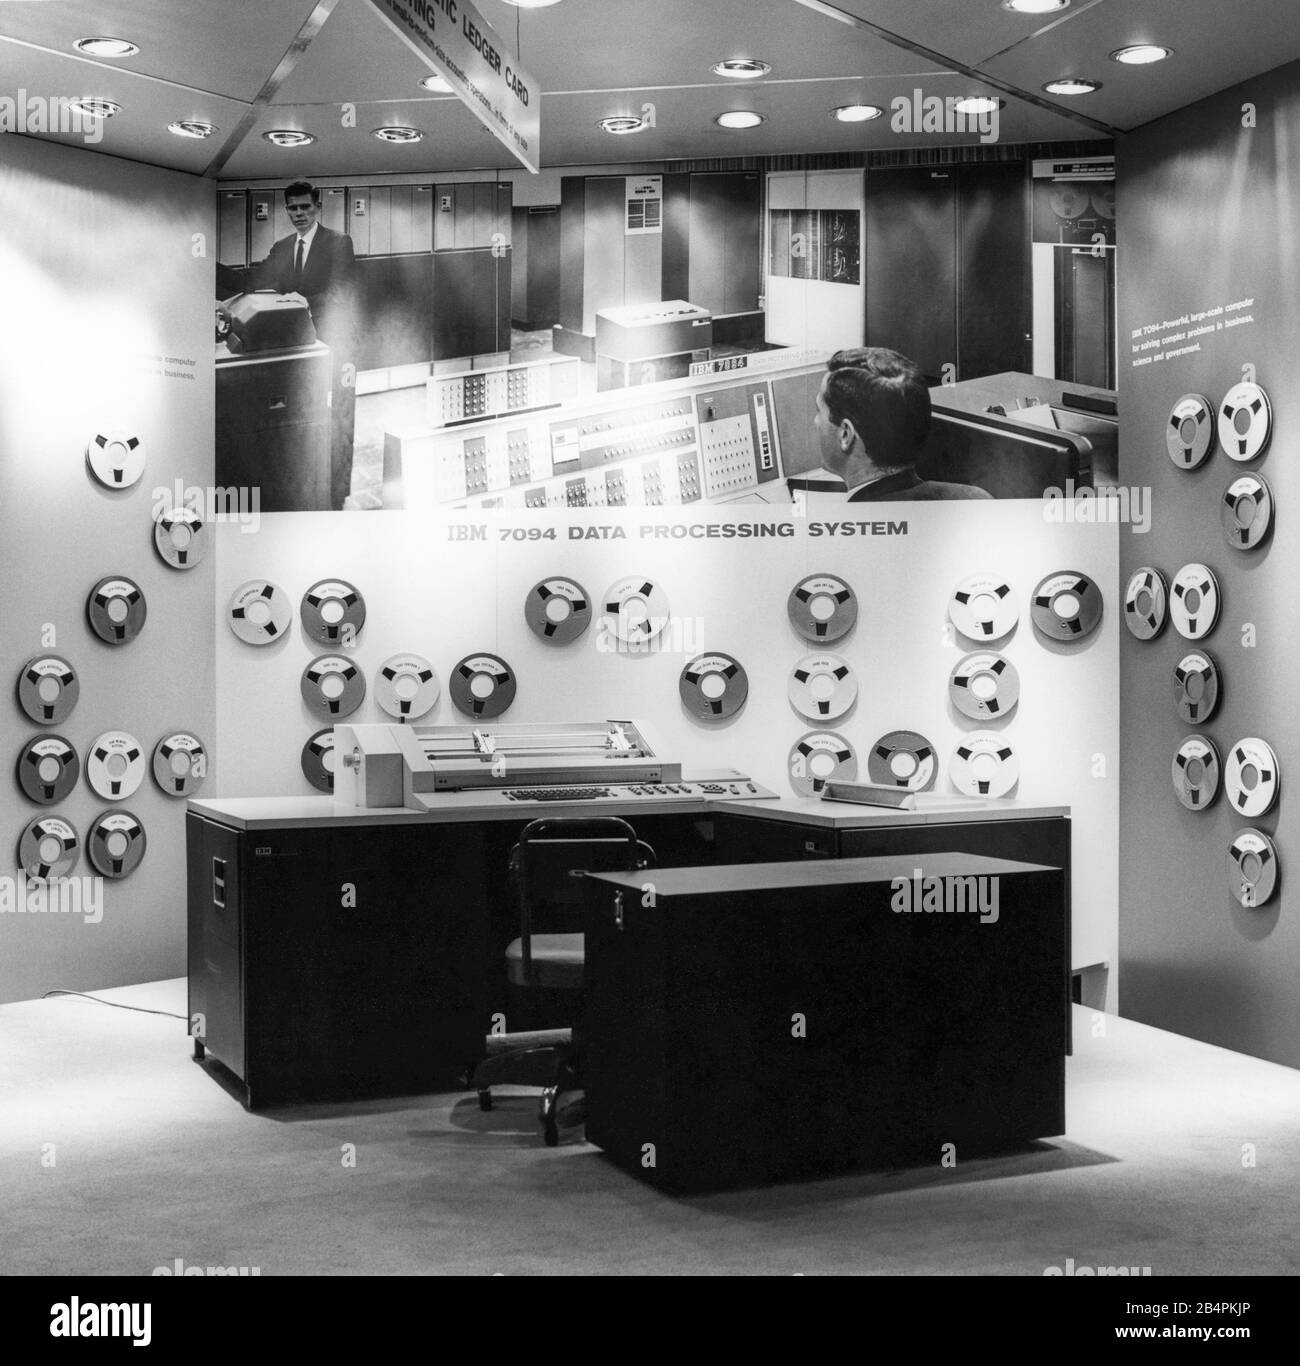 Visualizzazione della serie IBM 6400 di macchine di contabilità Magnetica Ledger con una visualizzazione sullo sfondo del computer IBM 7094 Data Processing System al IBM Business Show del New York City's New York Coliseum, circa il 30 aprile 1963. Lo spettacolo si è tenuto in collaborazione con l'incontro annuale dell'IBM Stockholder. Foto Stock